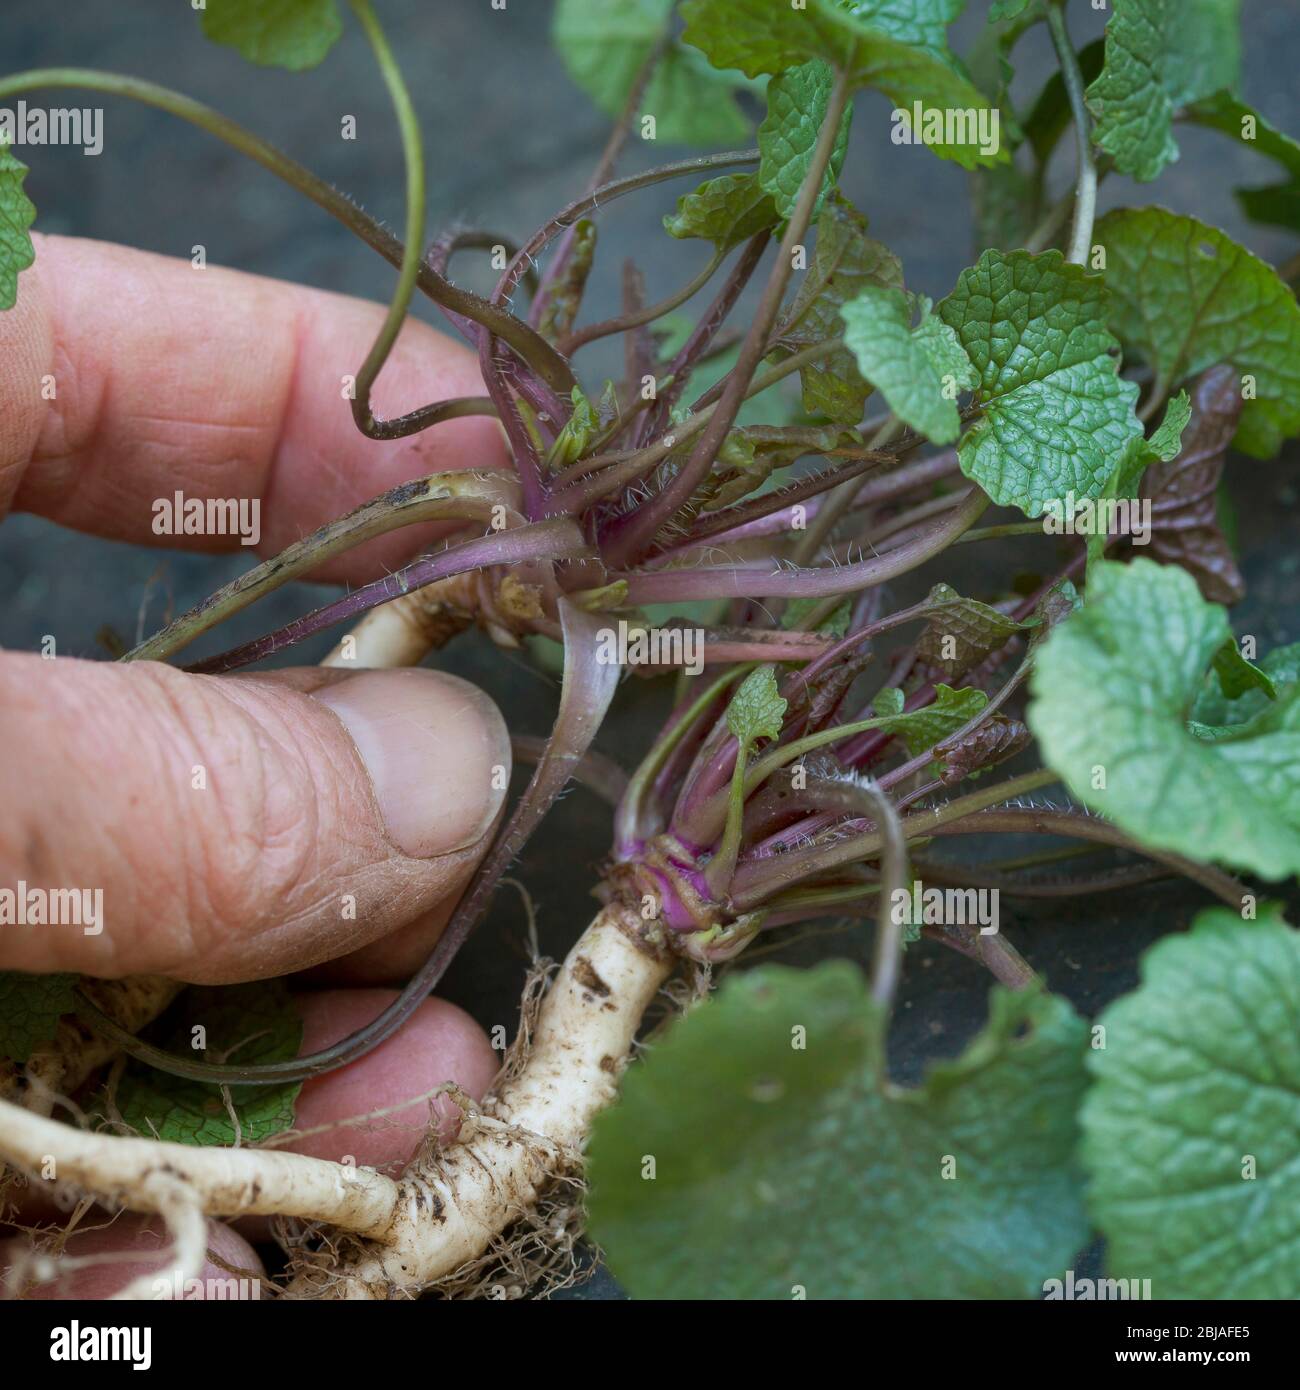 Senape all'aglio, aglio, Jack-by-the-Hedge (Alliaria petiolata), foglie giovani, raccolte prima della fioritura, in Germania Foto Stock